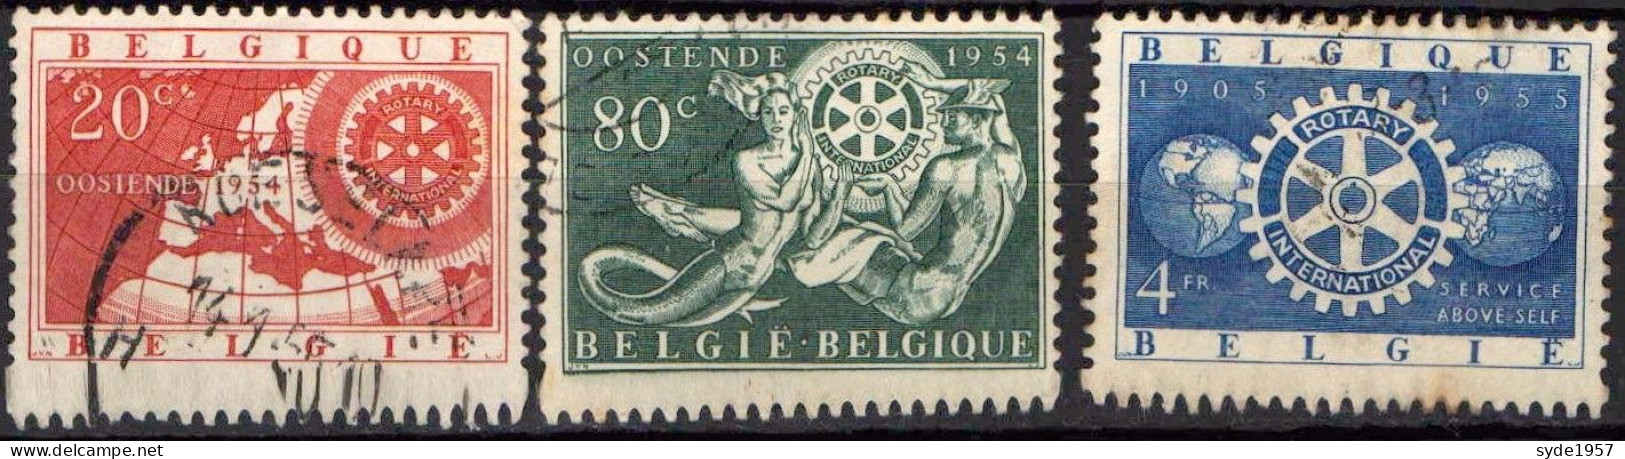 Belgique 1954 50ans Rotary International COB952 à 954 (complet)- Oblitérés - Gebraucht